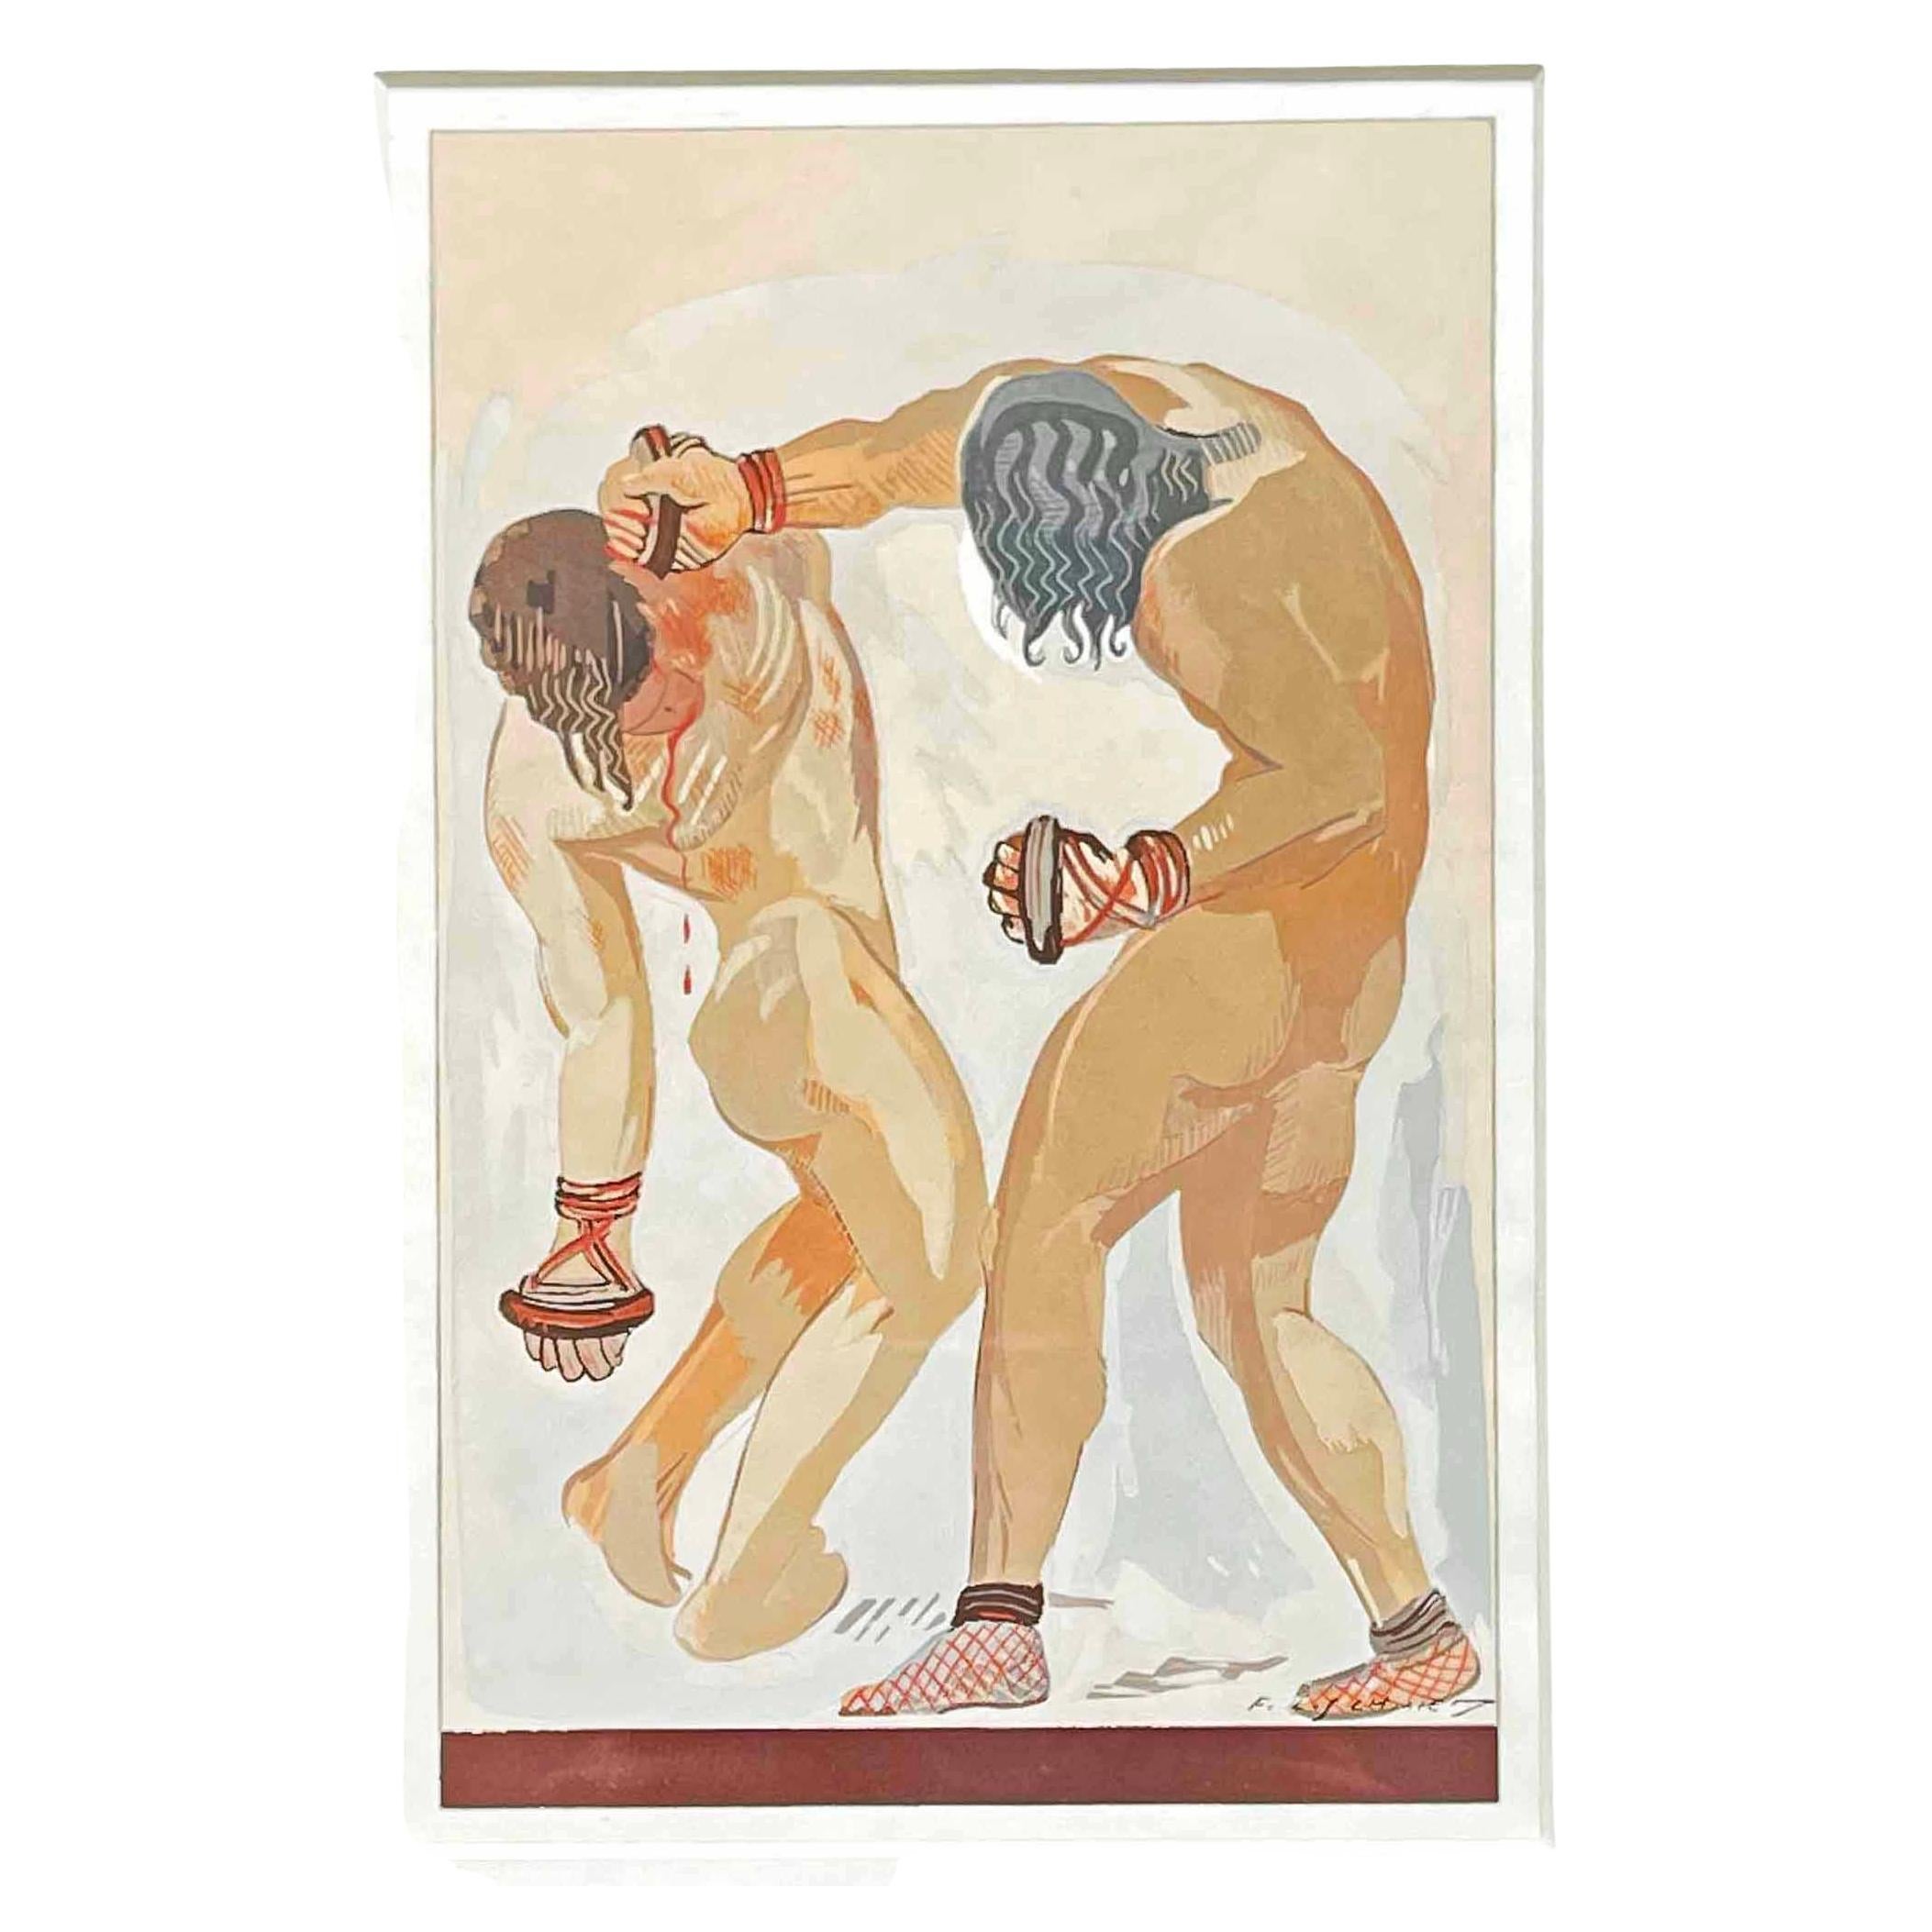 "Knockout", großartiges Art-Déco-Gemälde von François-Louis Schmied, Buchdesigner